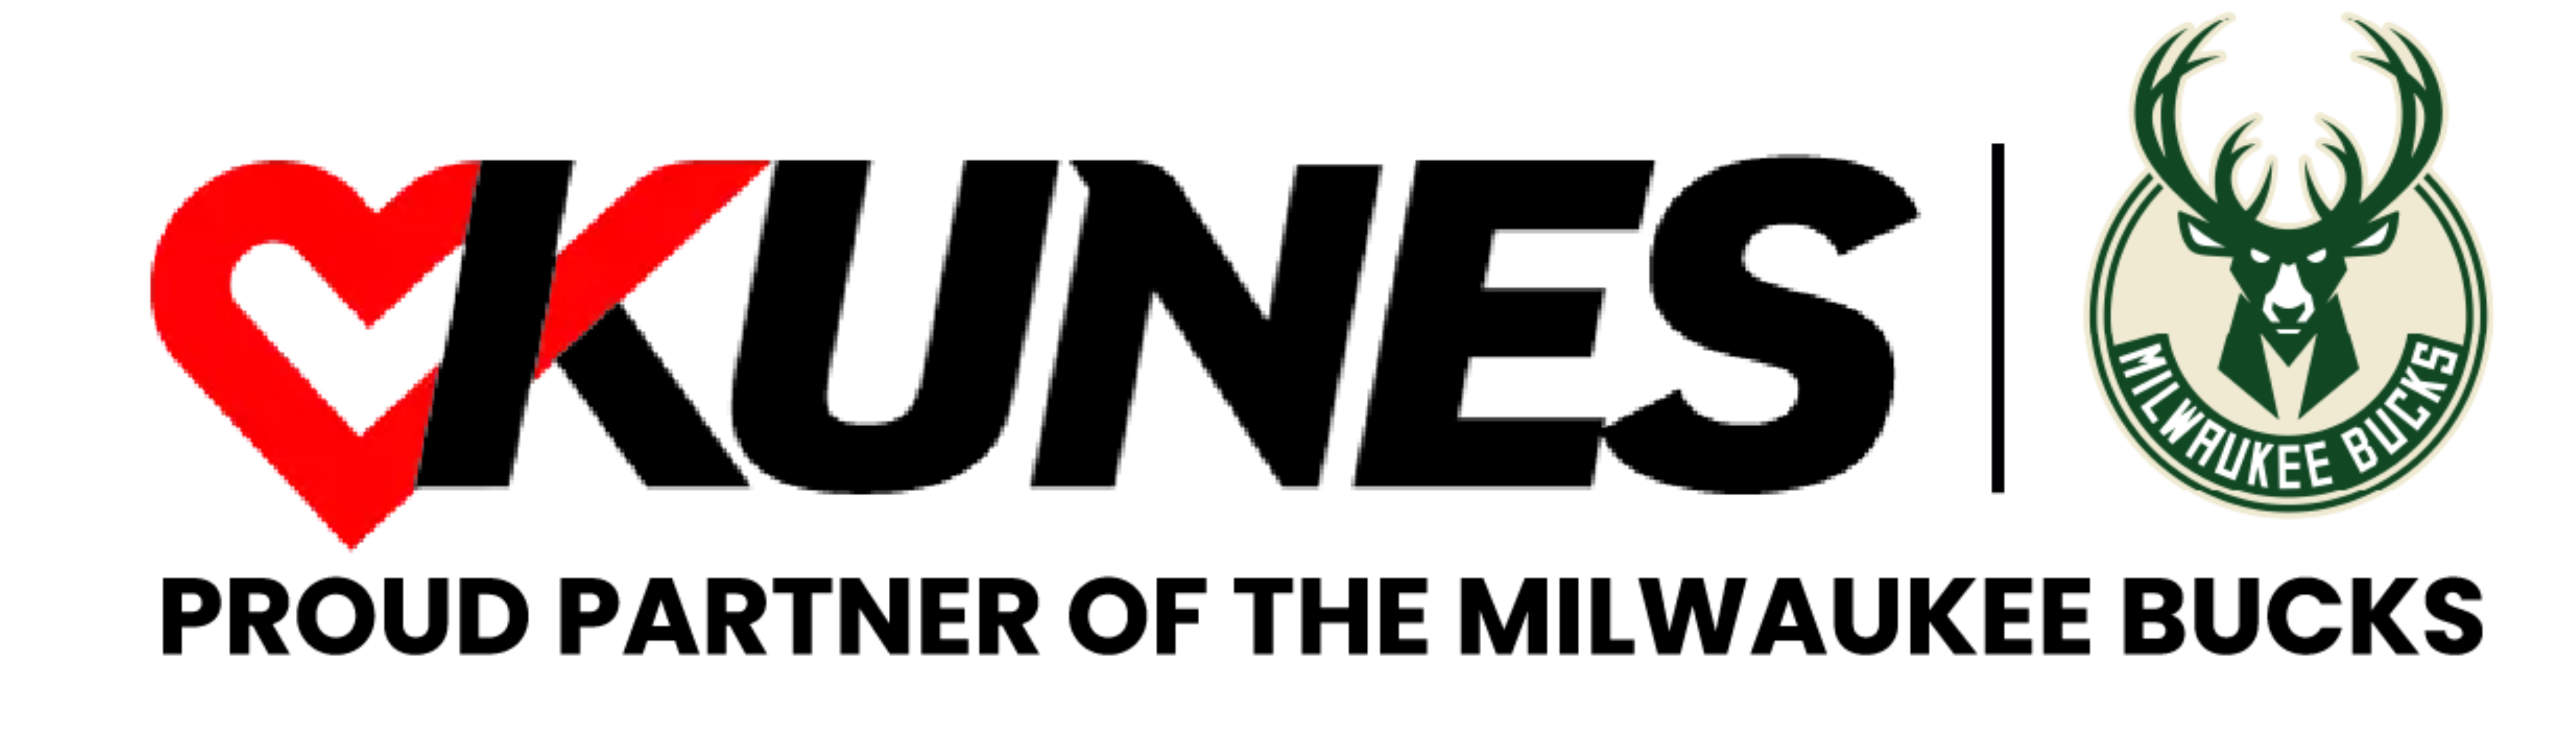 Kunes Auto Group-logo